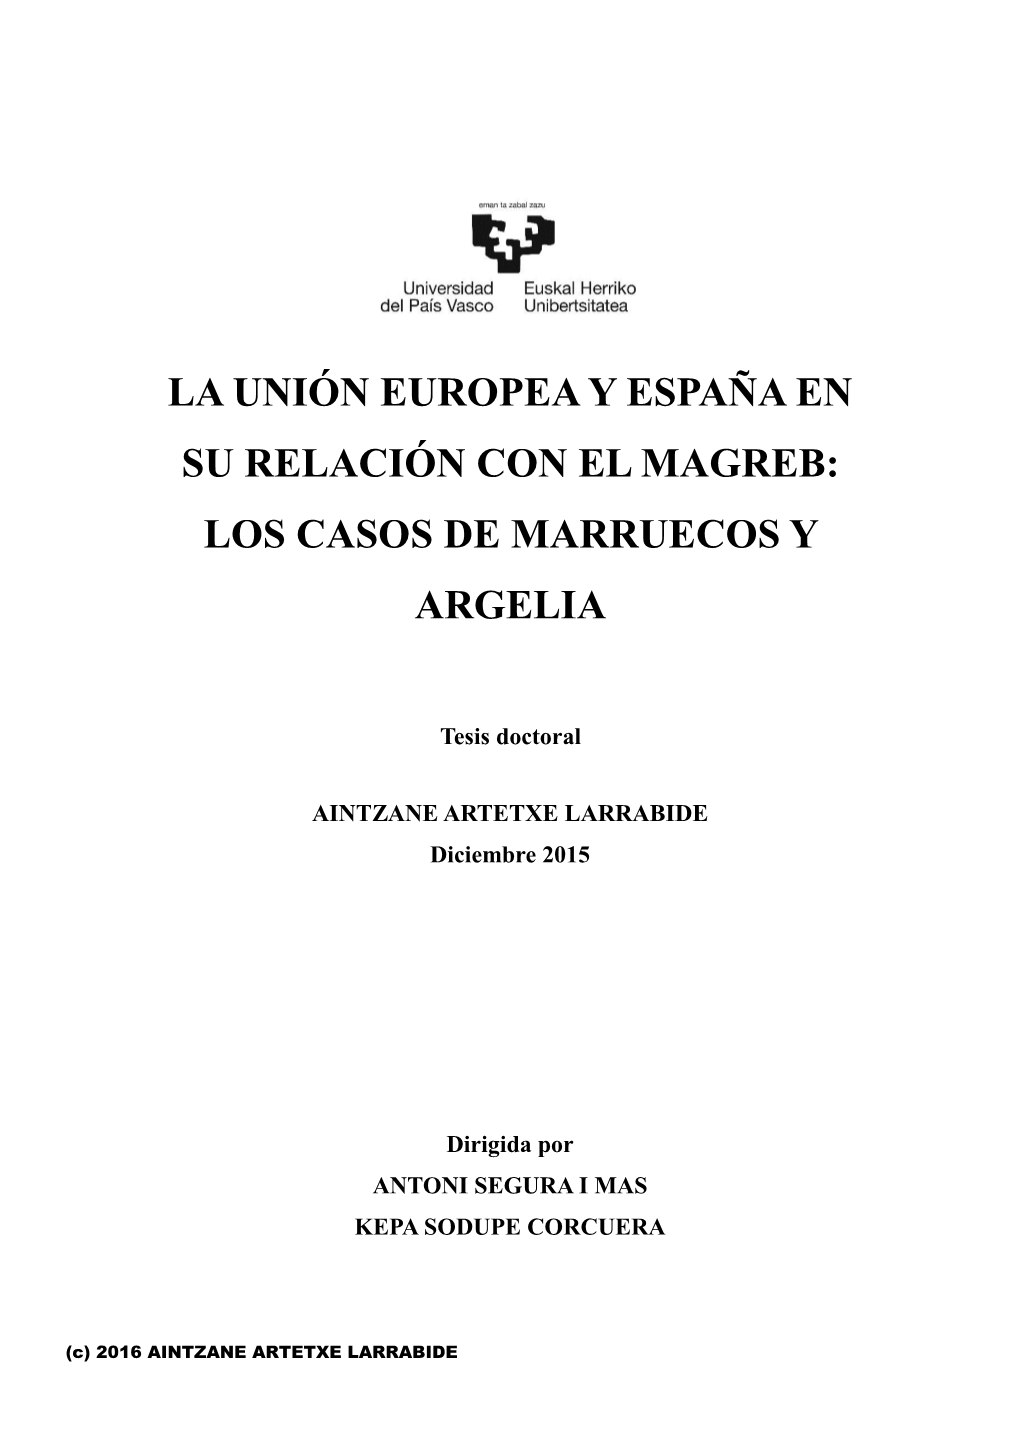 La Unión Europea Y España En Su Relación Con El Magreb: Los Casos De Marruecos Y Argelia